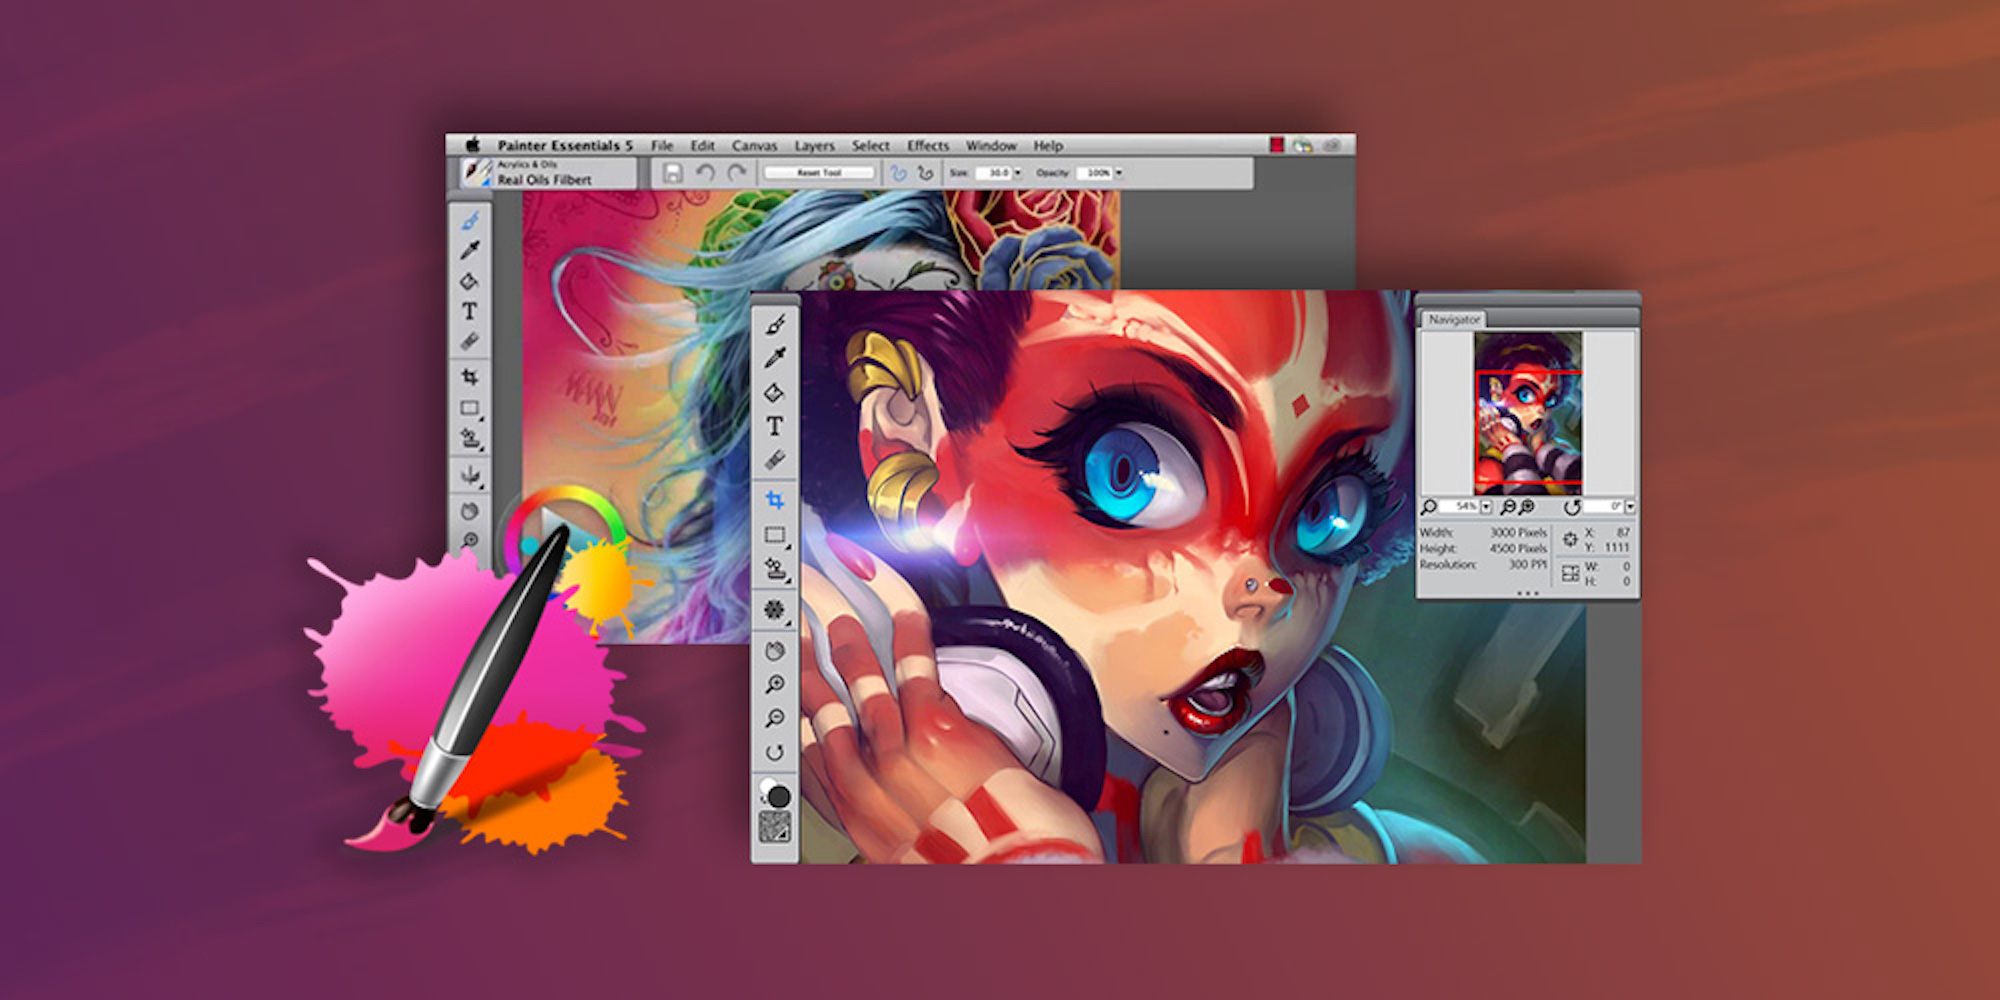 instal the new for mac Corel Paintshop 2023 Pro Ultimate 25.2.0.58